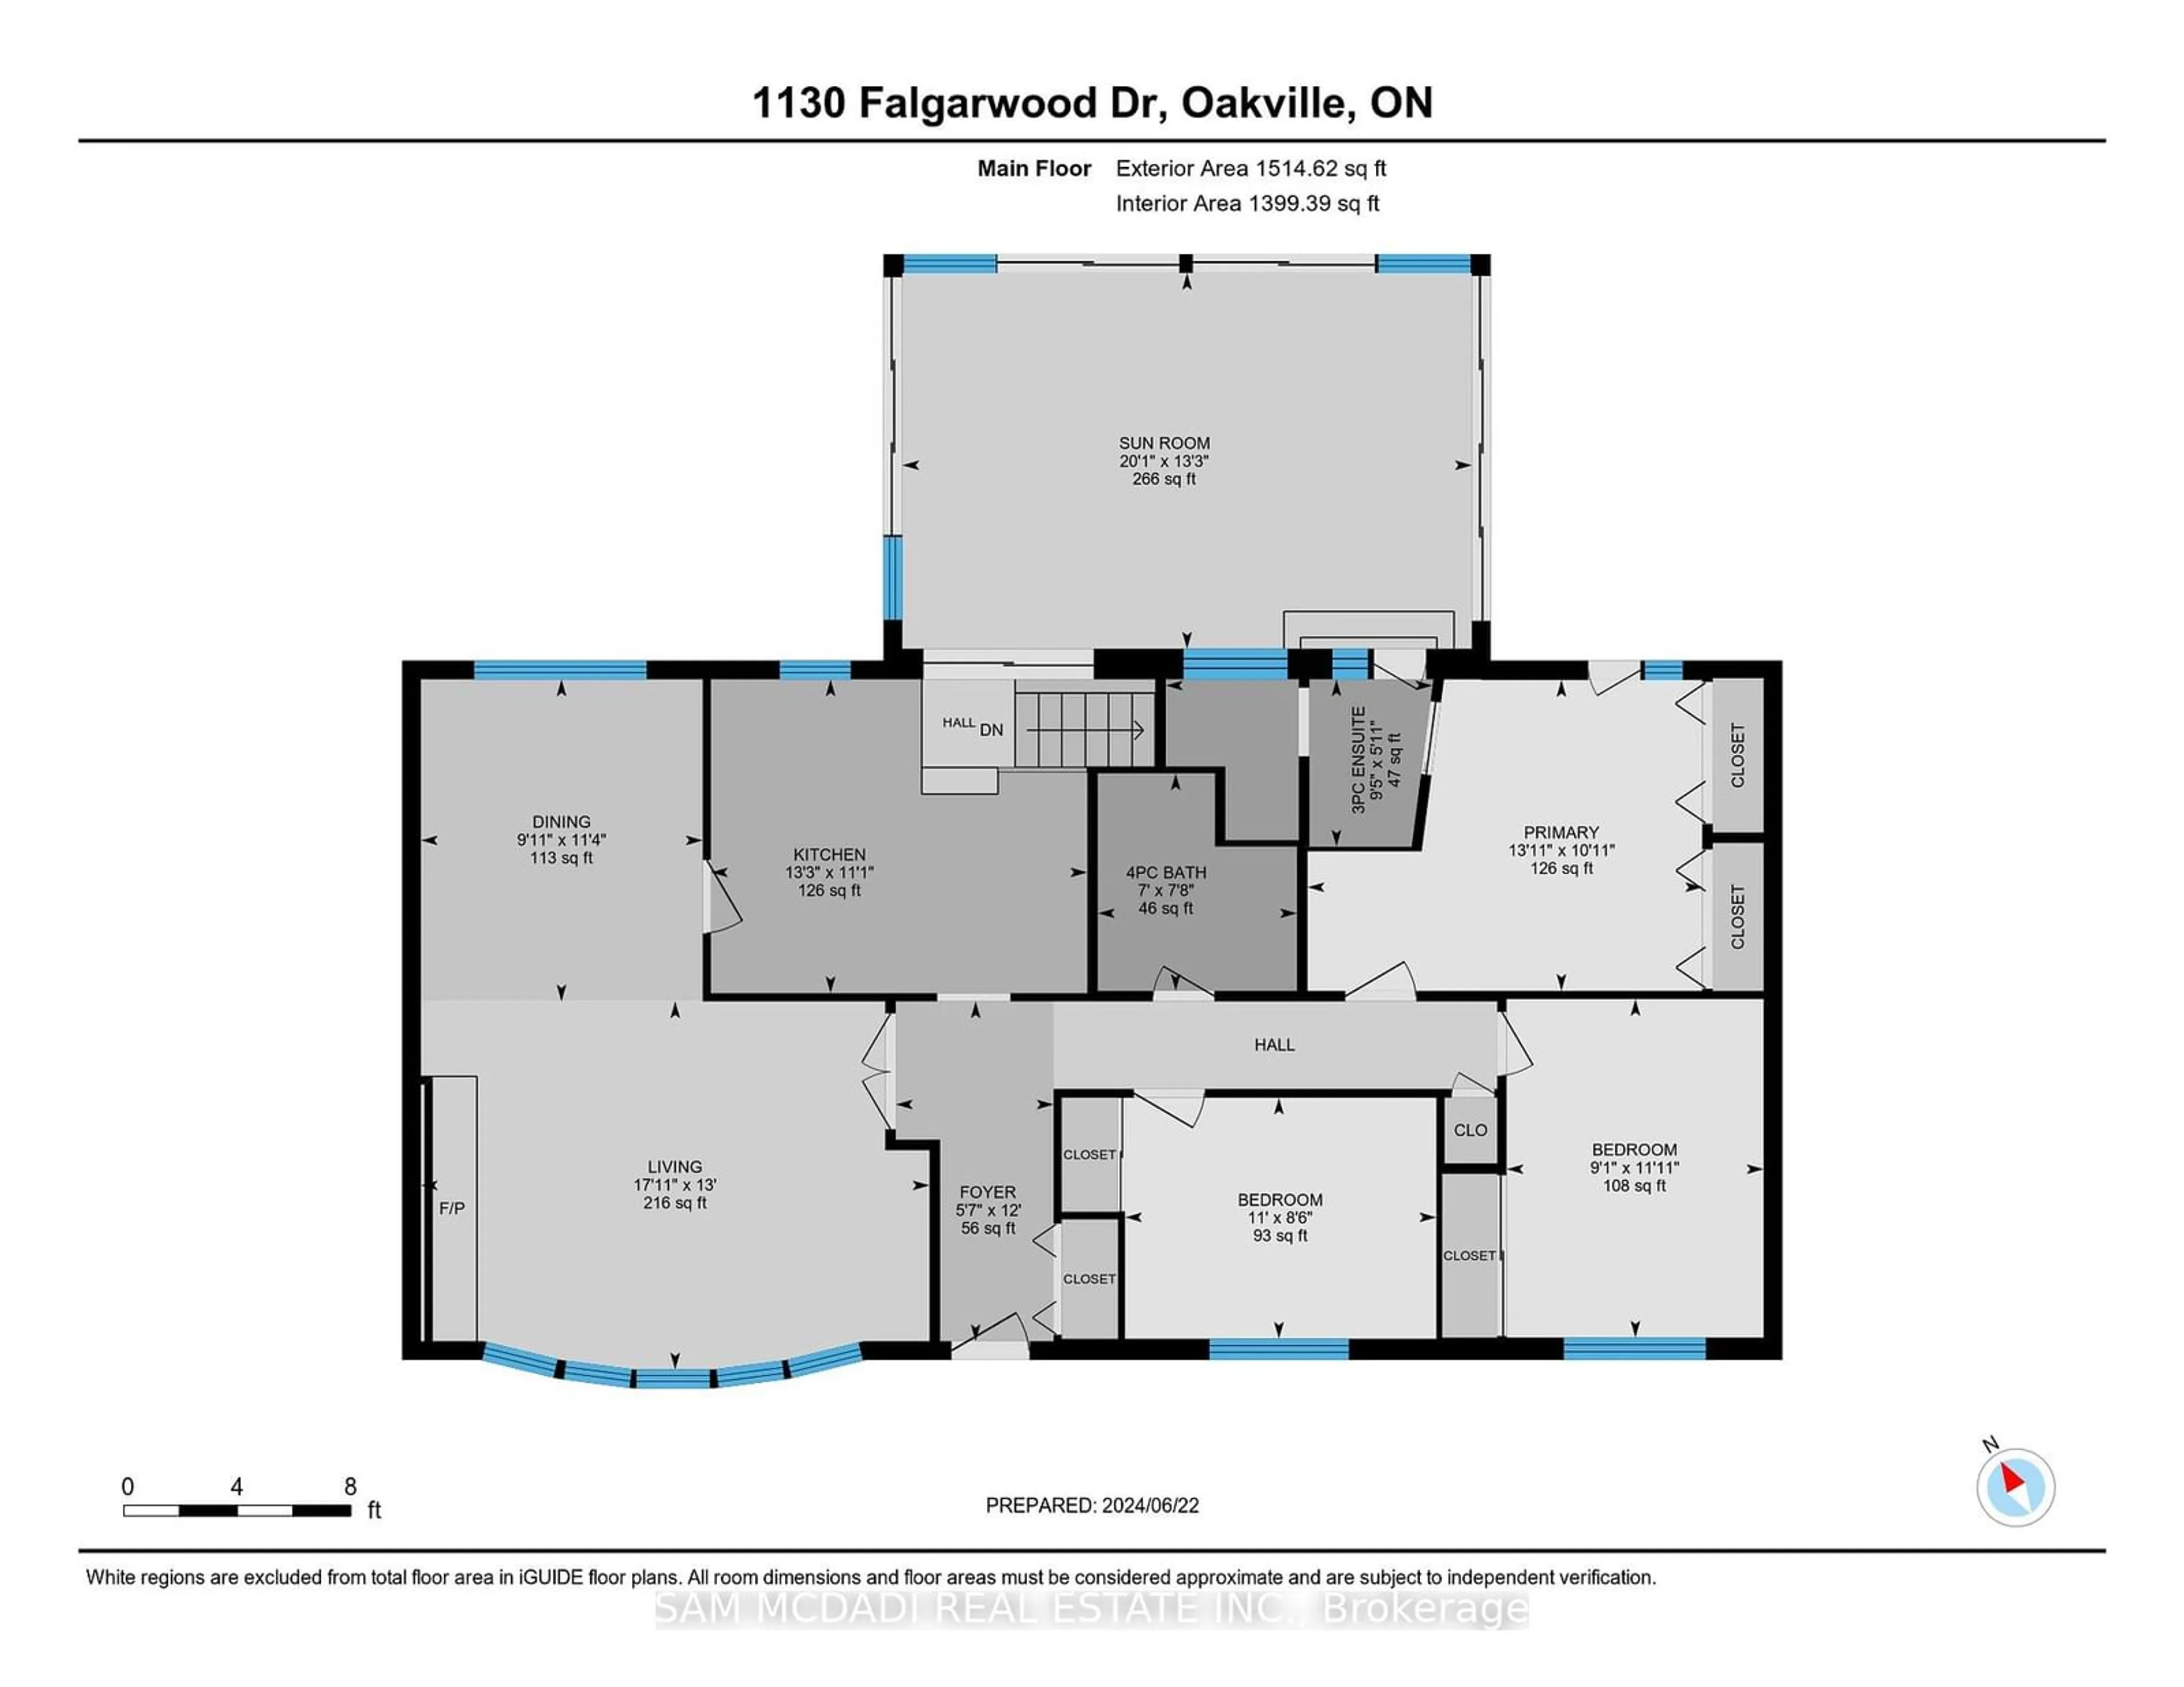 Floor plan for 1130 Falgarwood Dr, Oakville Ontario L6H 1N9